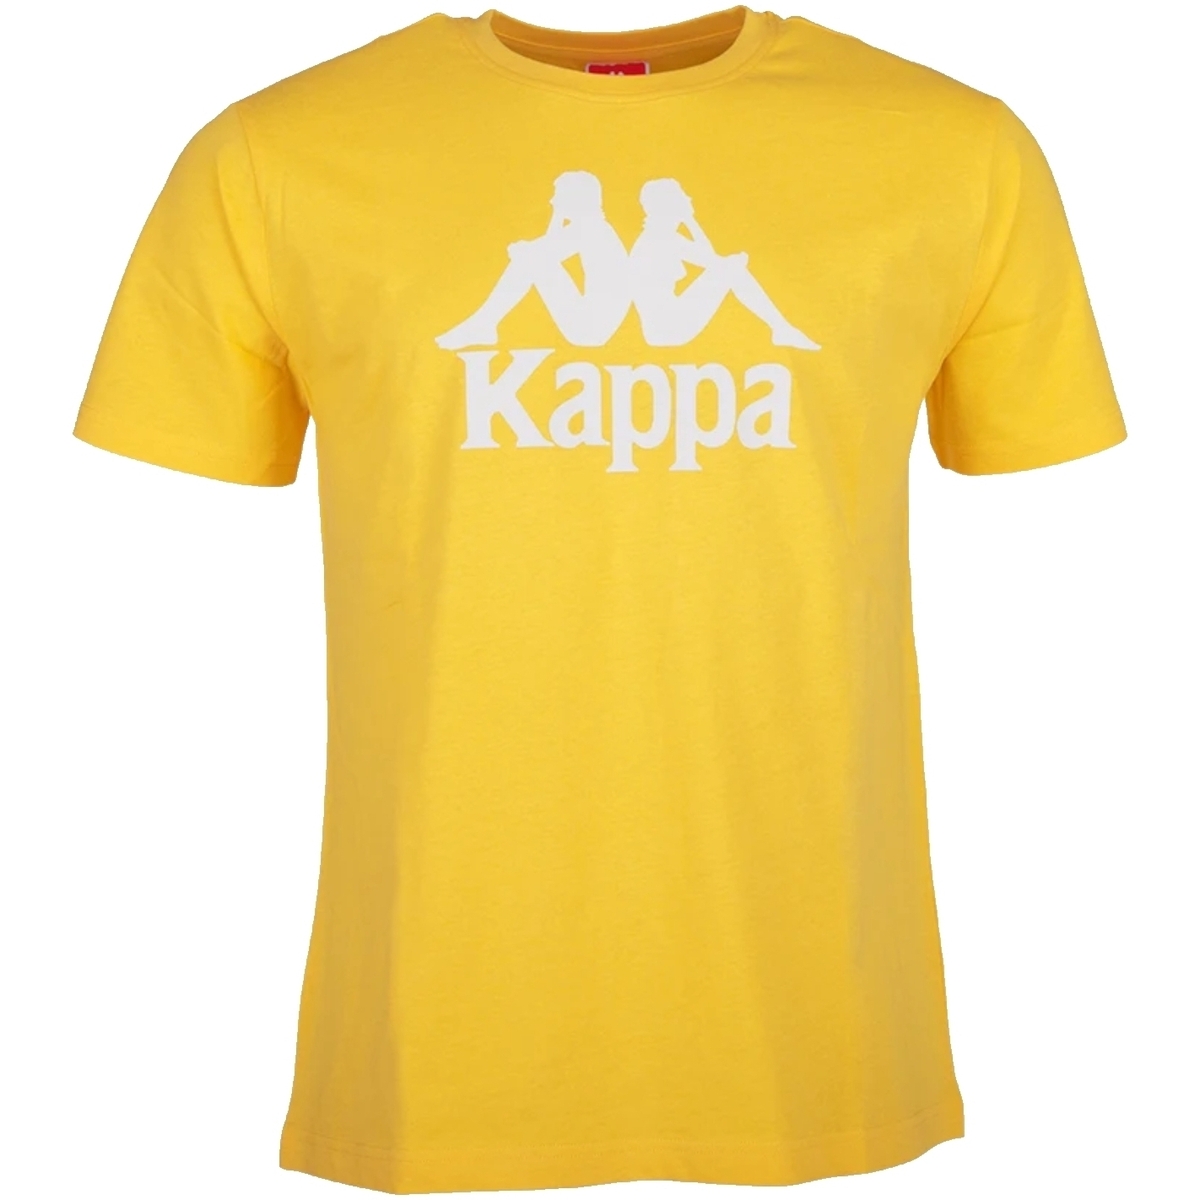 Kappa Jaune Caspar Kids T-Shirt GP5wkcf6